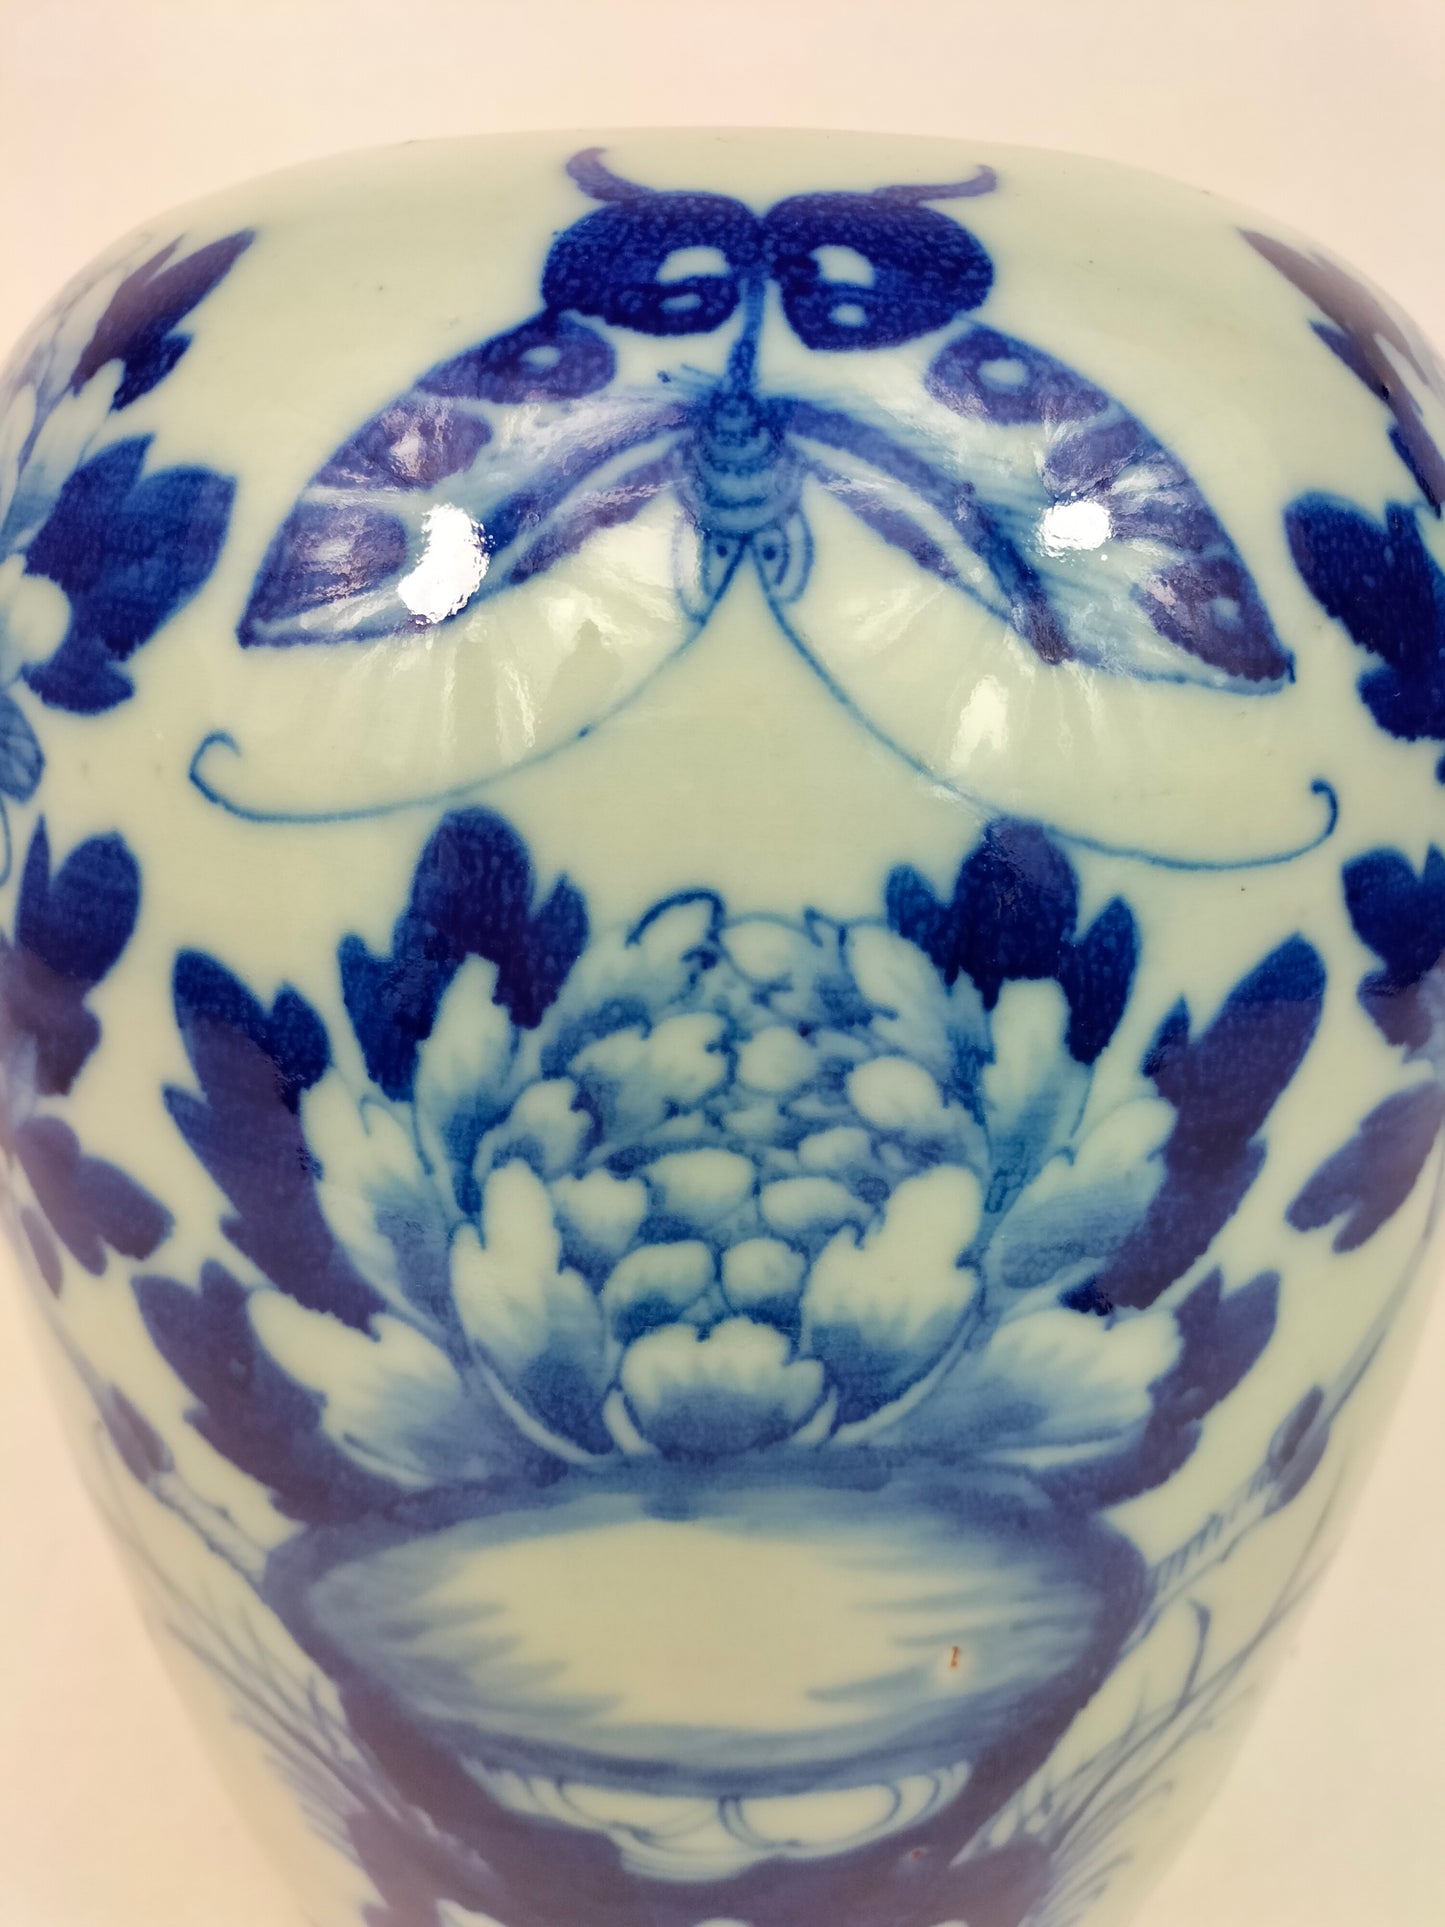 装饰有蝴蝶和花朵的古董中国青瓷彩色姜缸 // 清代 - 19 世纪